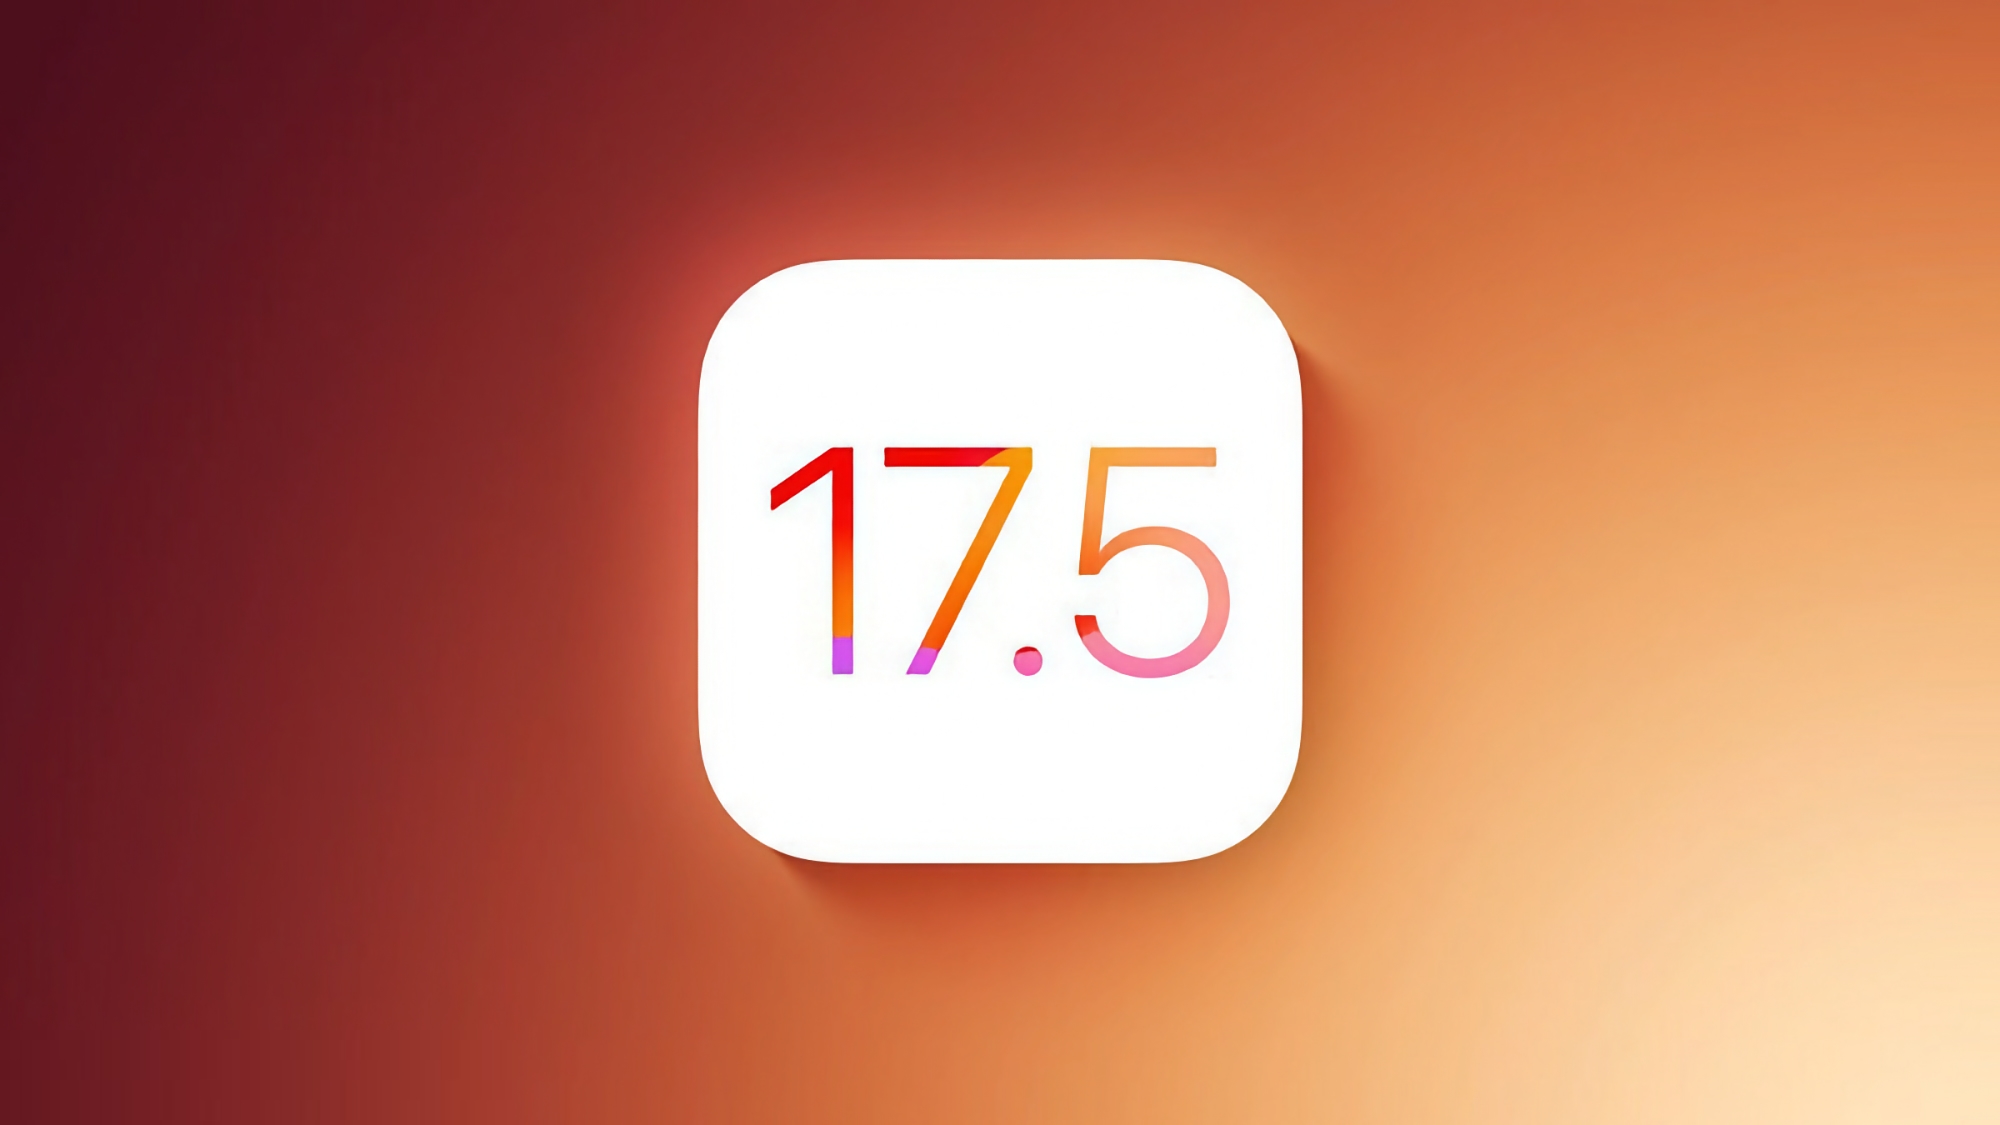 Apple har börjat testa iOS 17.5 Beta 4 och iPadOS 17.5 Beta 4